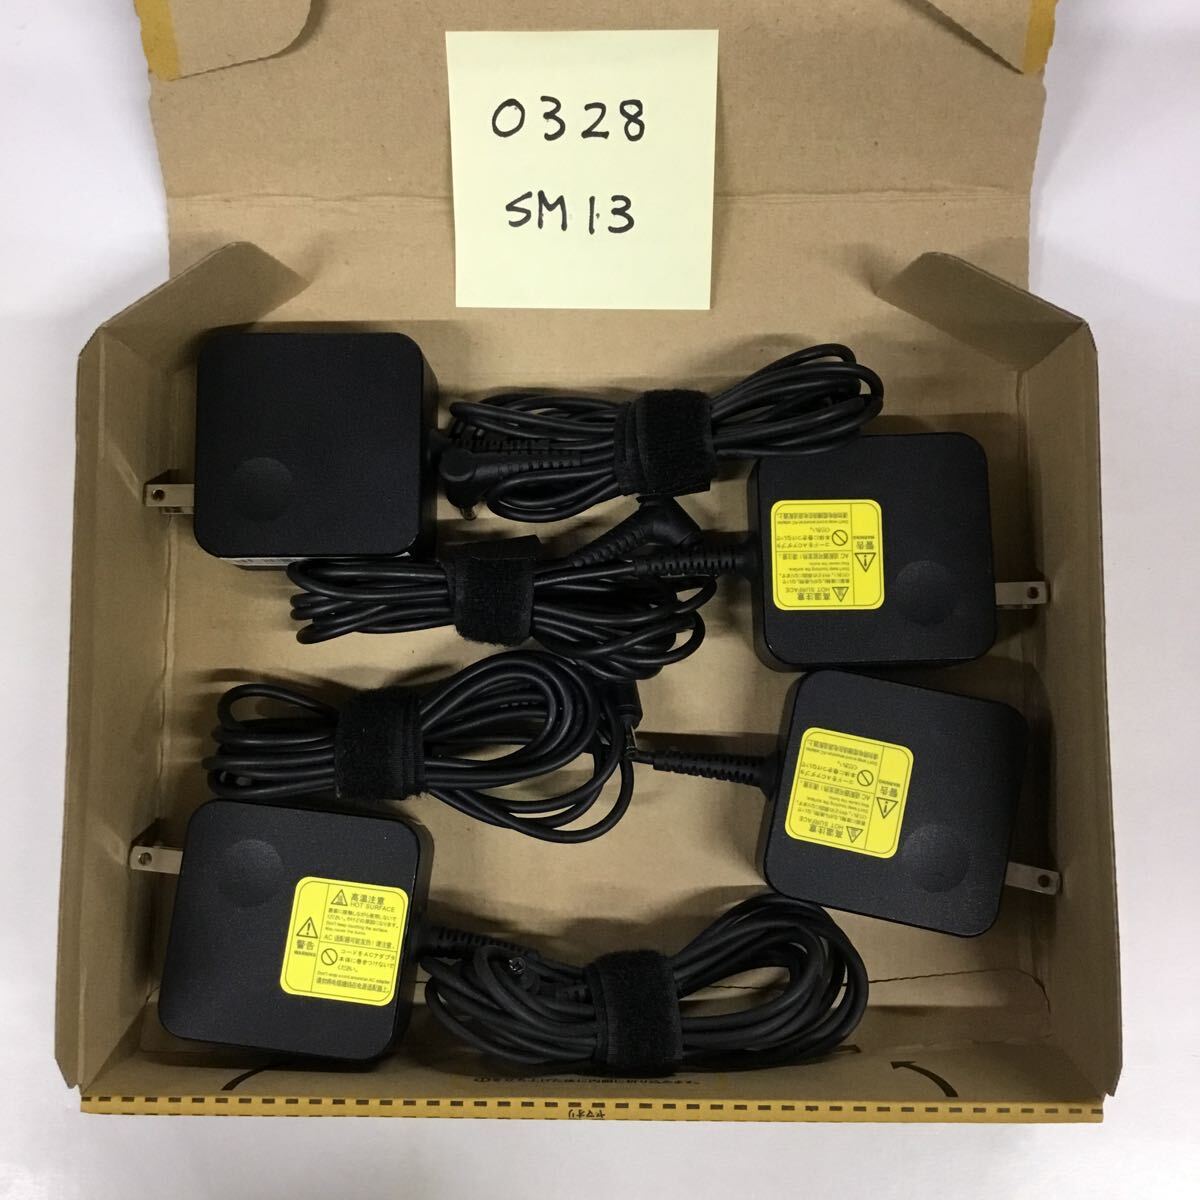 (0328SM13) free shipping / used /NEC/PA-1450-55NL/20V/2.25A/ original AC adapter 4 piece set 